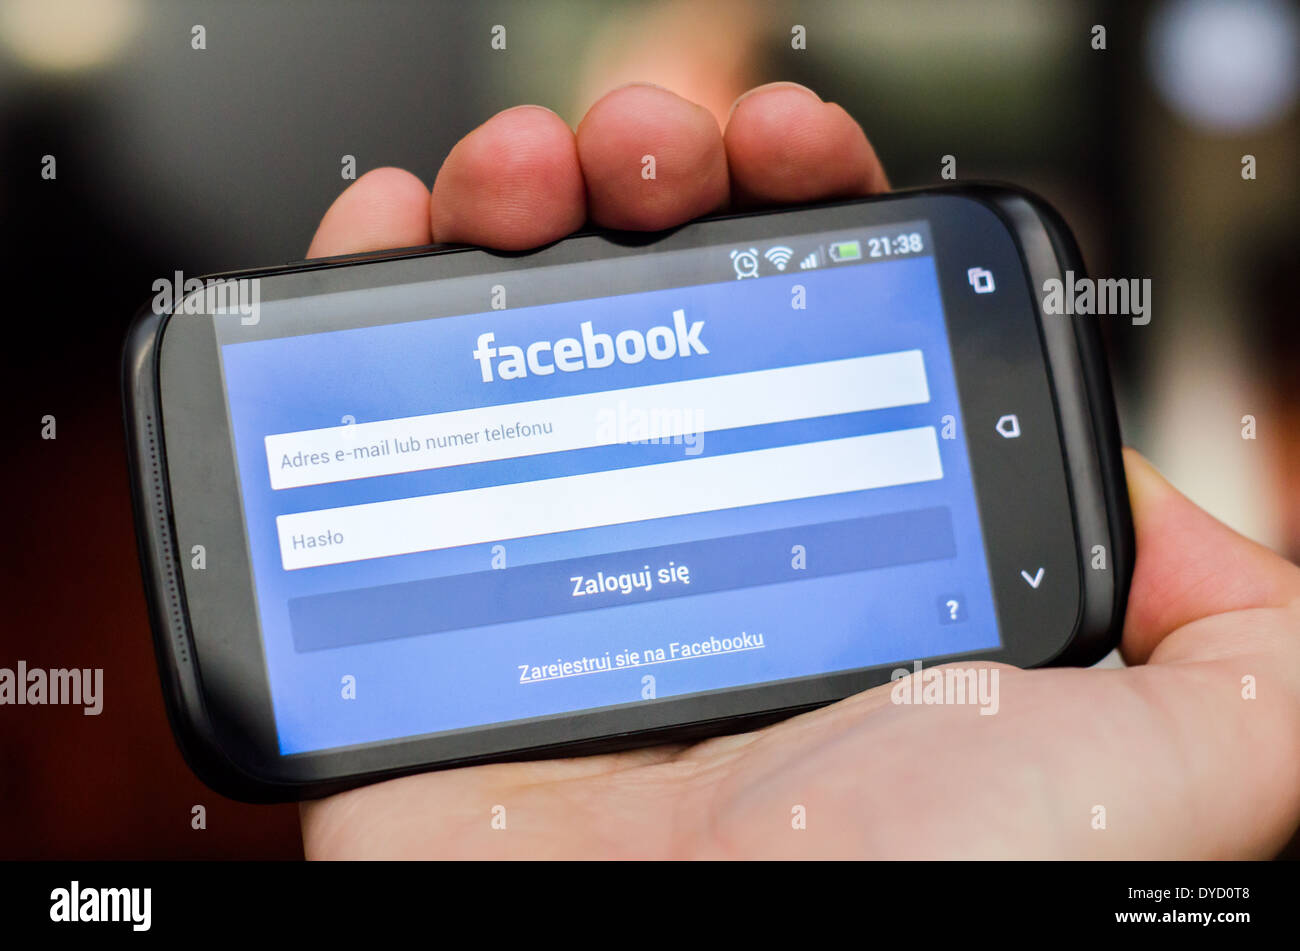 Mano azienda smartphone con il social network Facebook mobile app con interfaccia polacco Foto Stock